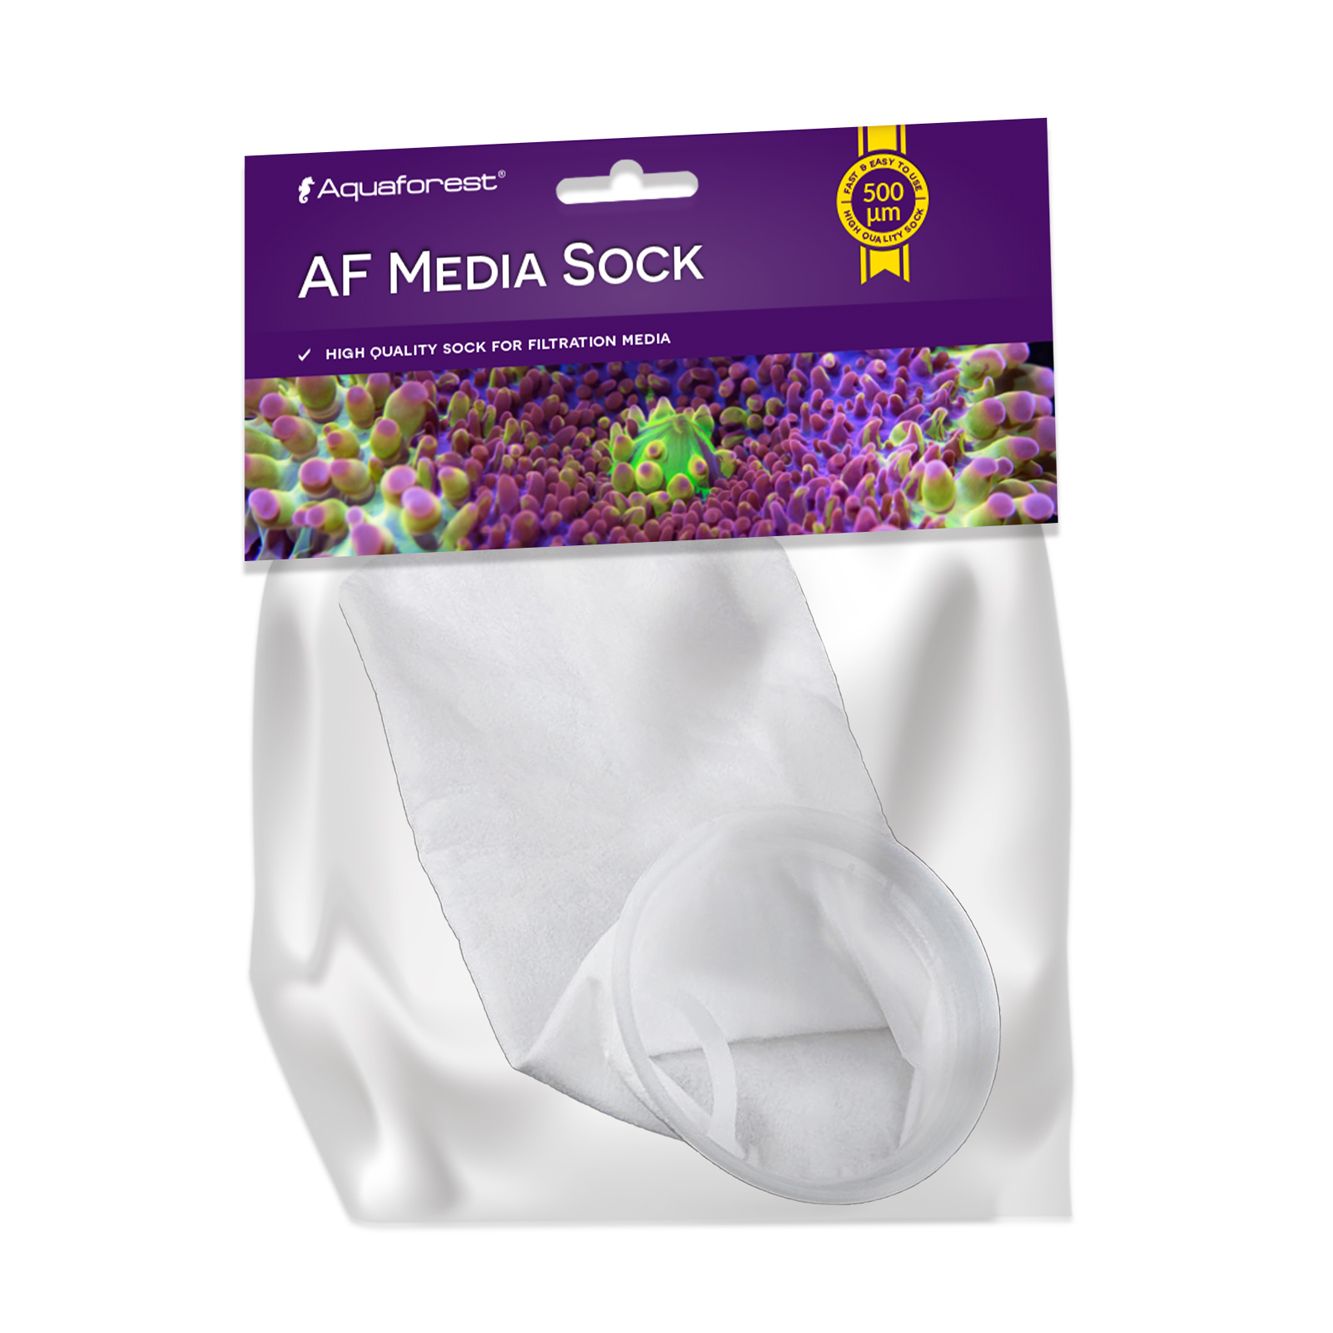 AF Media Sock XL